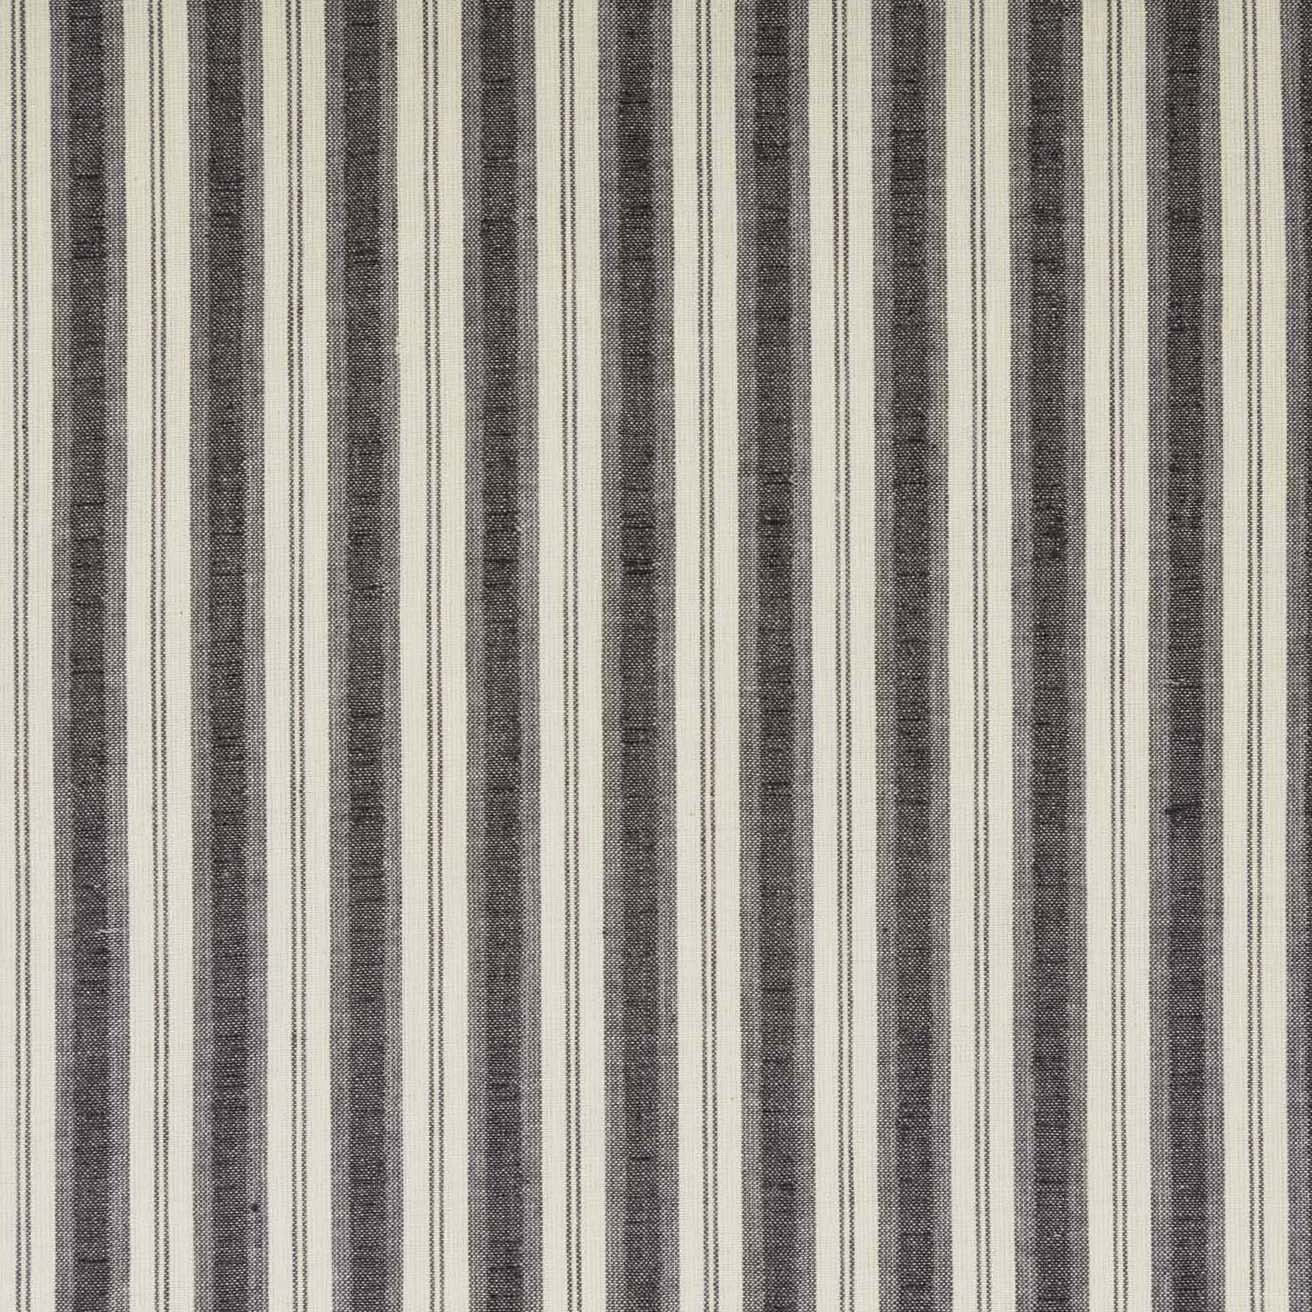 Ashmont Ticking Stripe Prairie Swag Set of 2 36x36x18